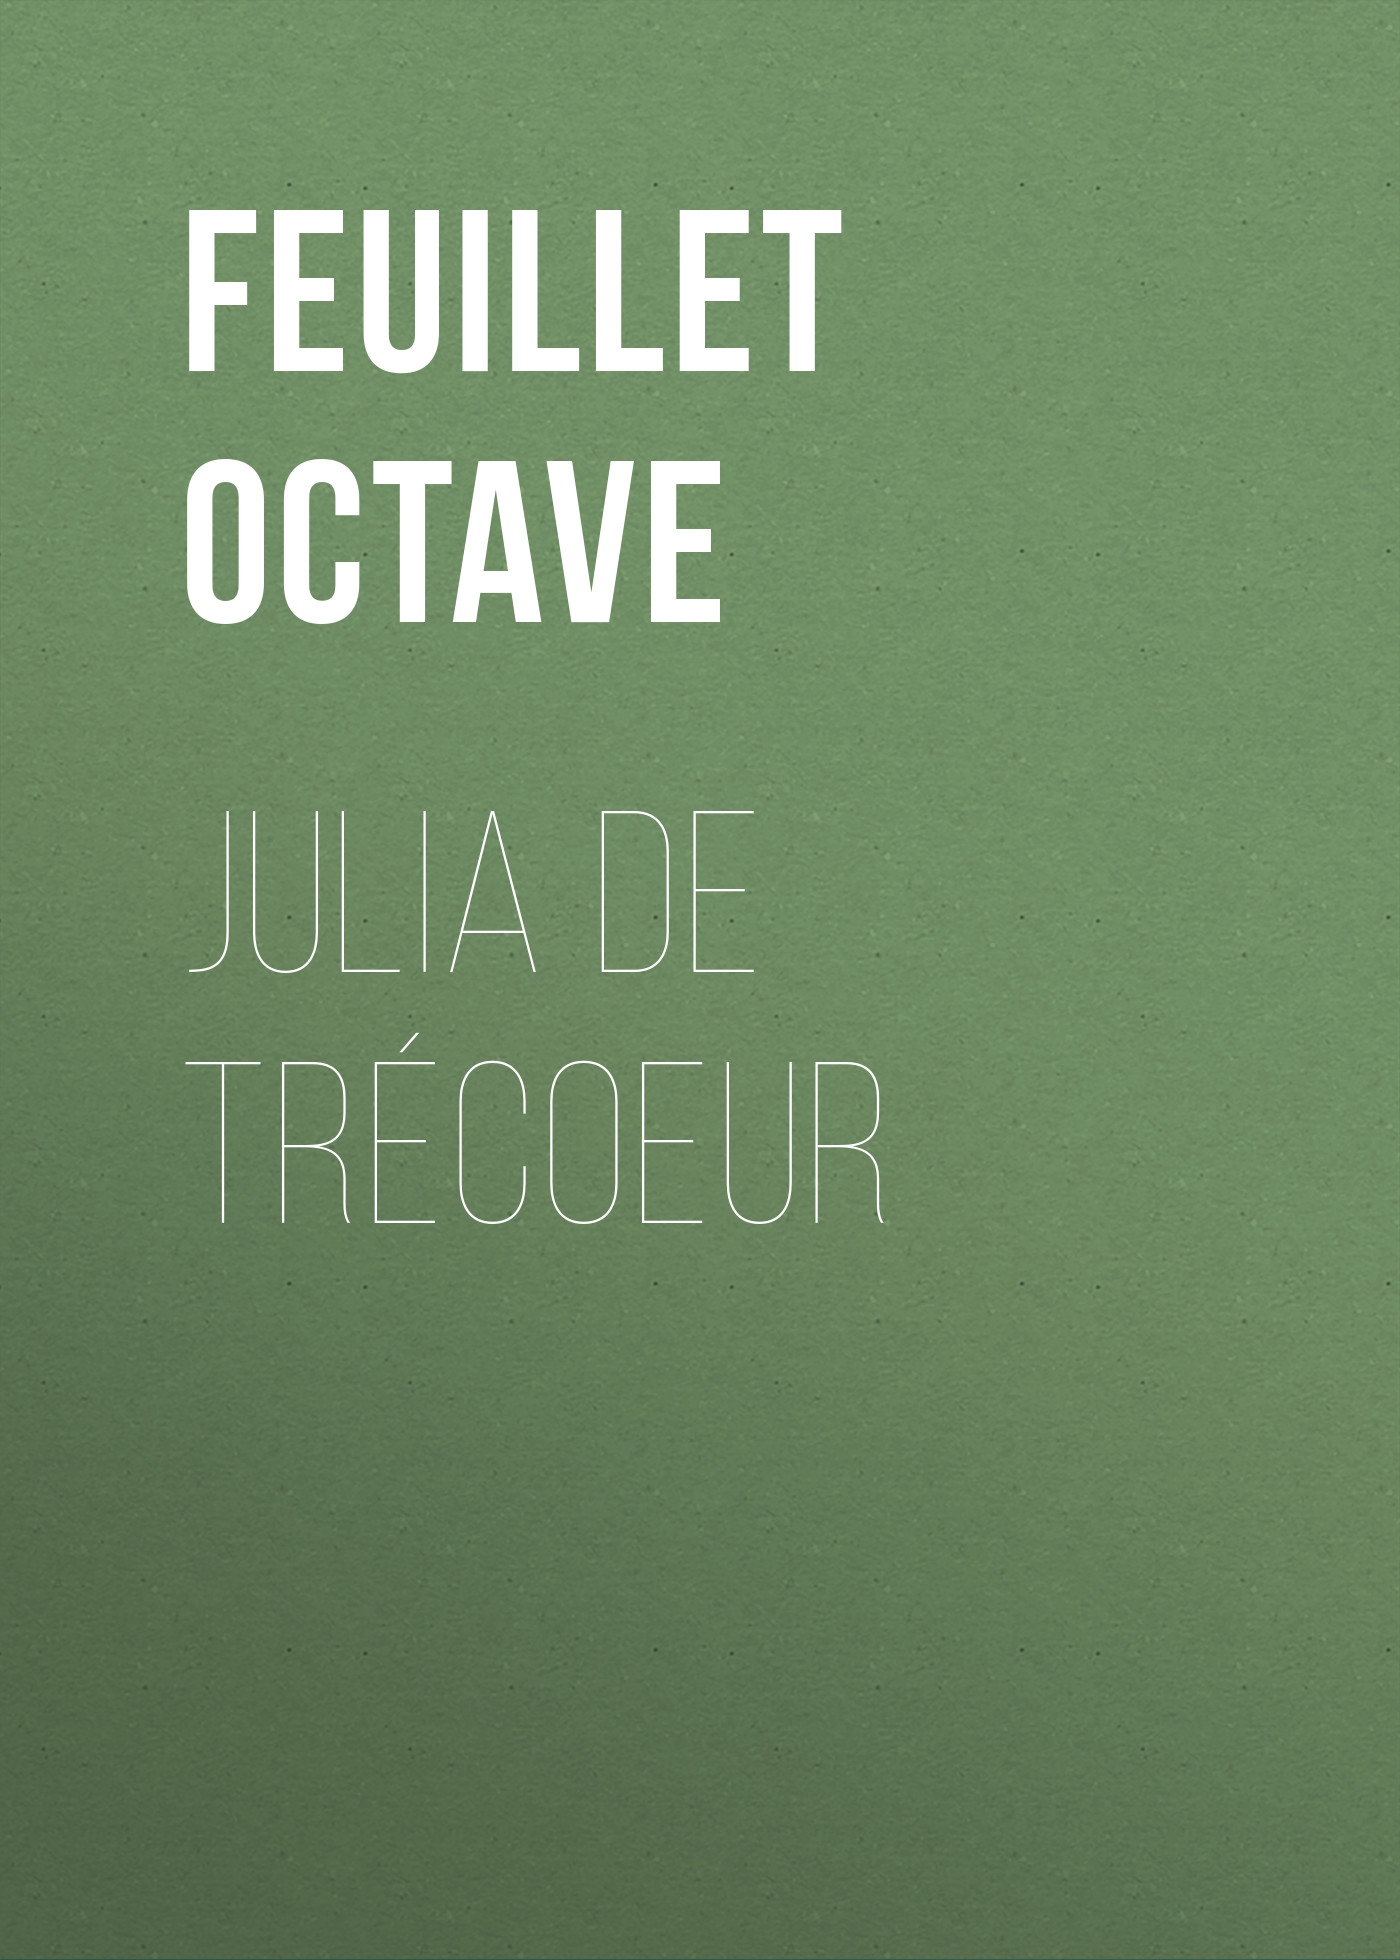 Книга Julia de Trécoeur из серии , созданная Octave Feuillet, может относится к жанру Зарубежная старинная литература, Зарубежная классика, Иностранные языки. Стоимость электронной книги Julia de Trécoeur с идентификатором 24728497 составляет 0 руб.